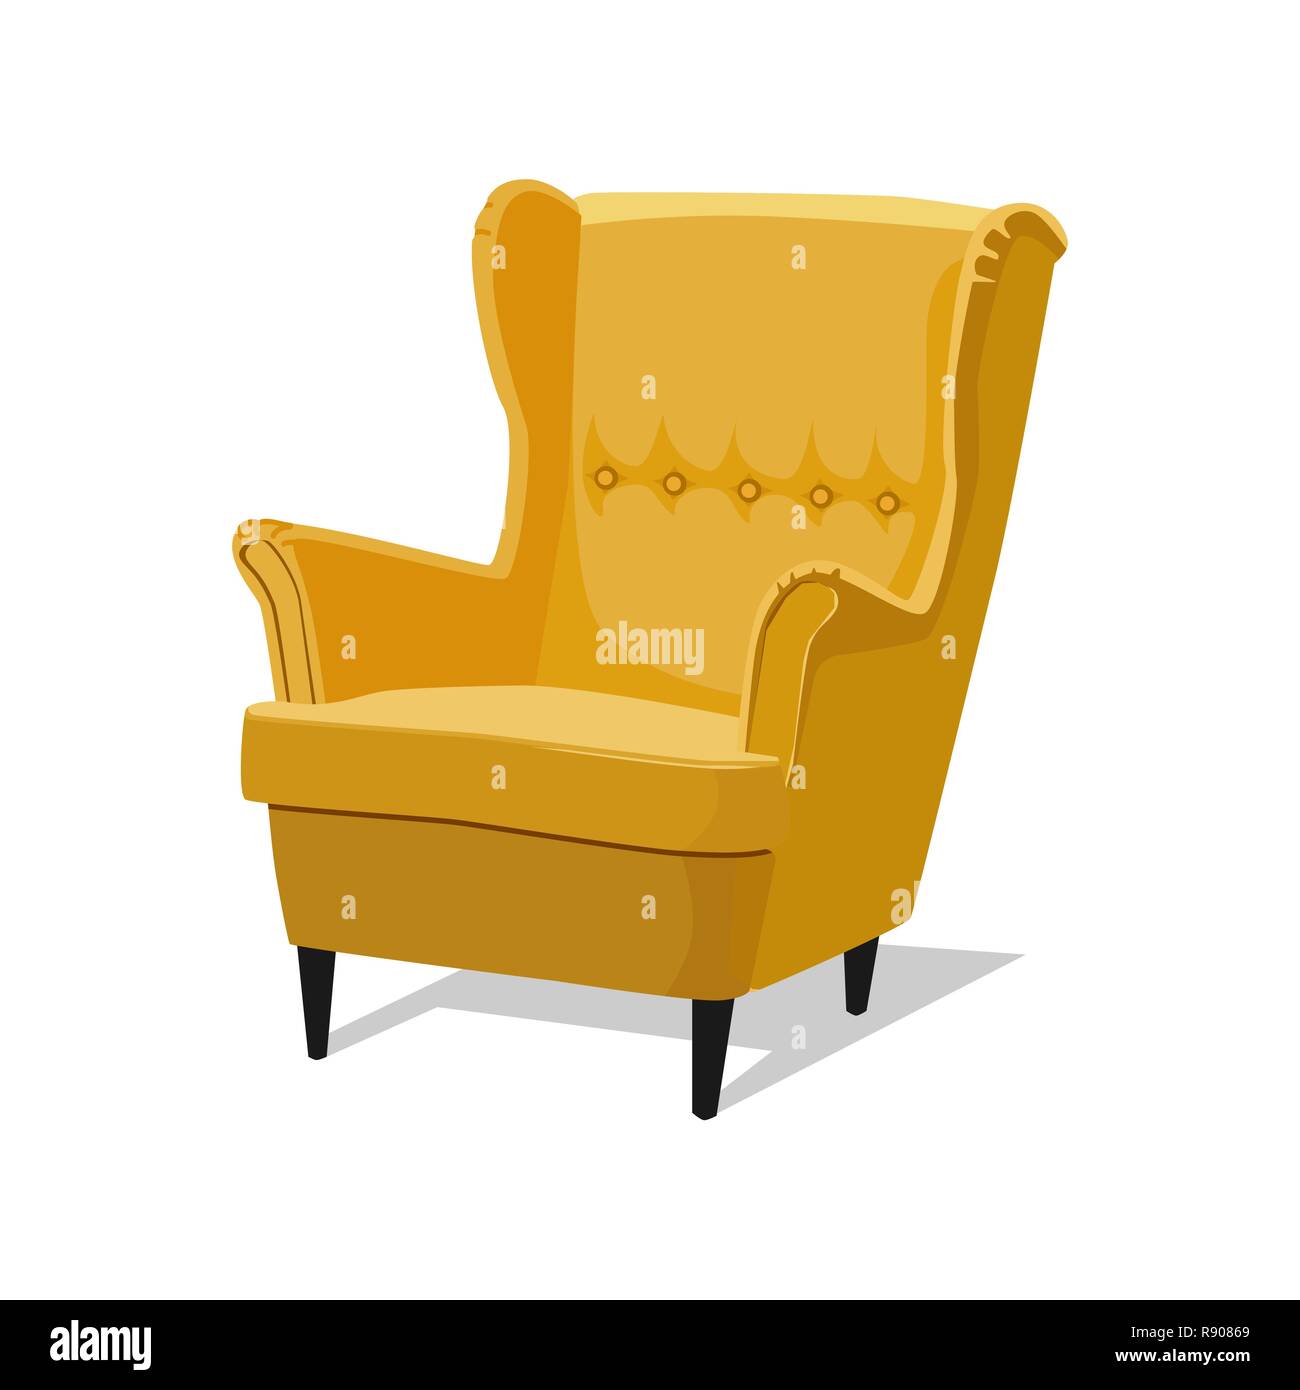 Moderno di colore giallo poltrona soffice con imbottitura - interior design elemento isolato su sfondo bianco. Illustrazione Vettoriale